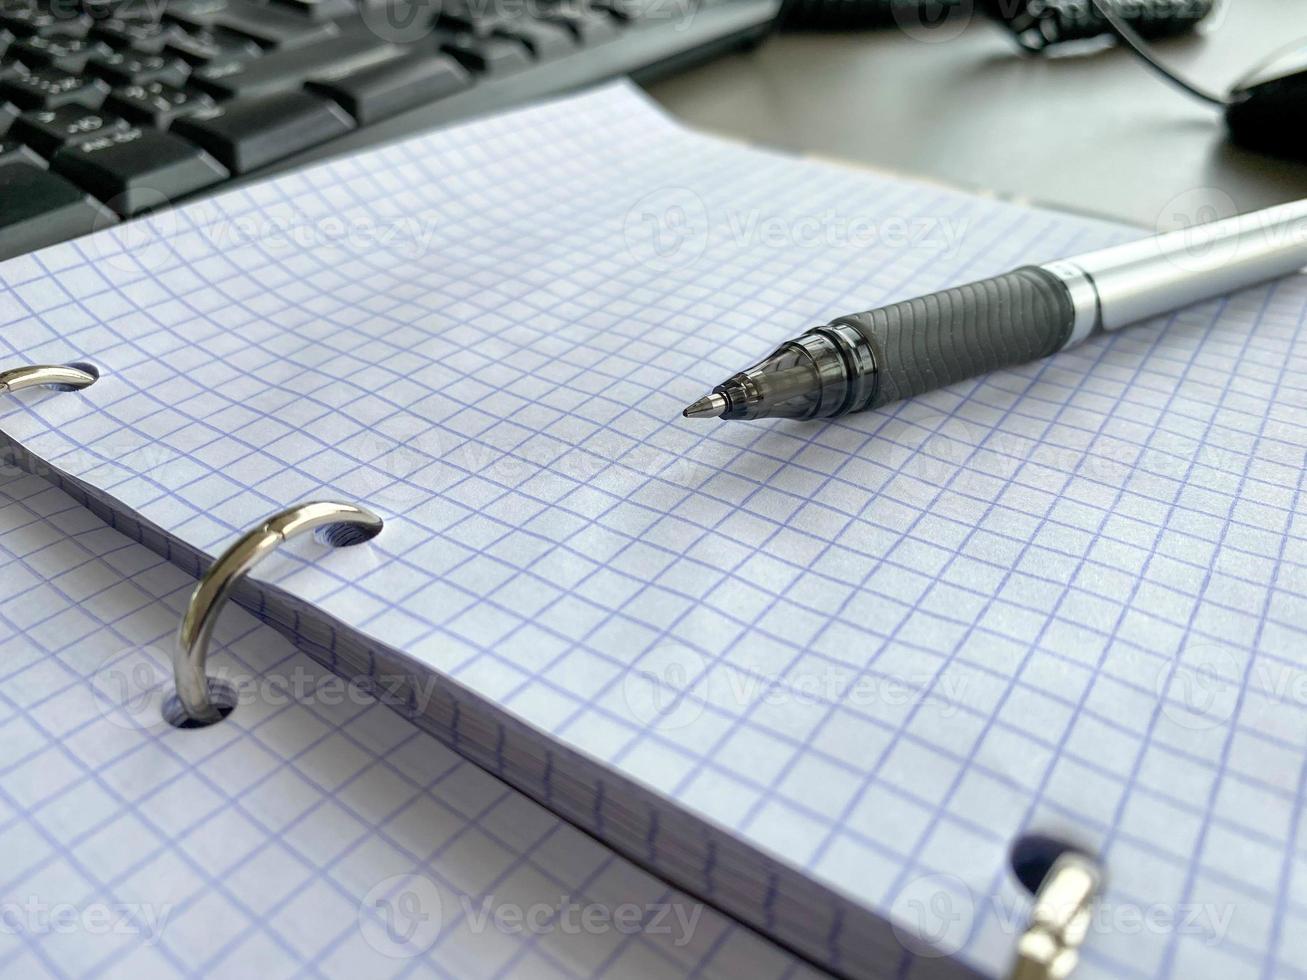 un bolígrafo de escritura descansa sobre un bloc de notas con hojas de papel cuadradas en un escritorio con papelería en una oficina de negocios foto